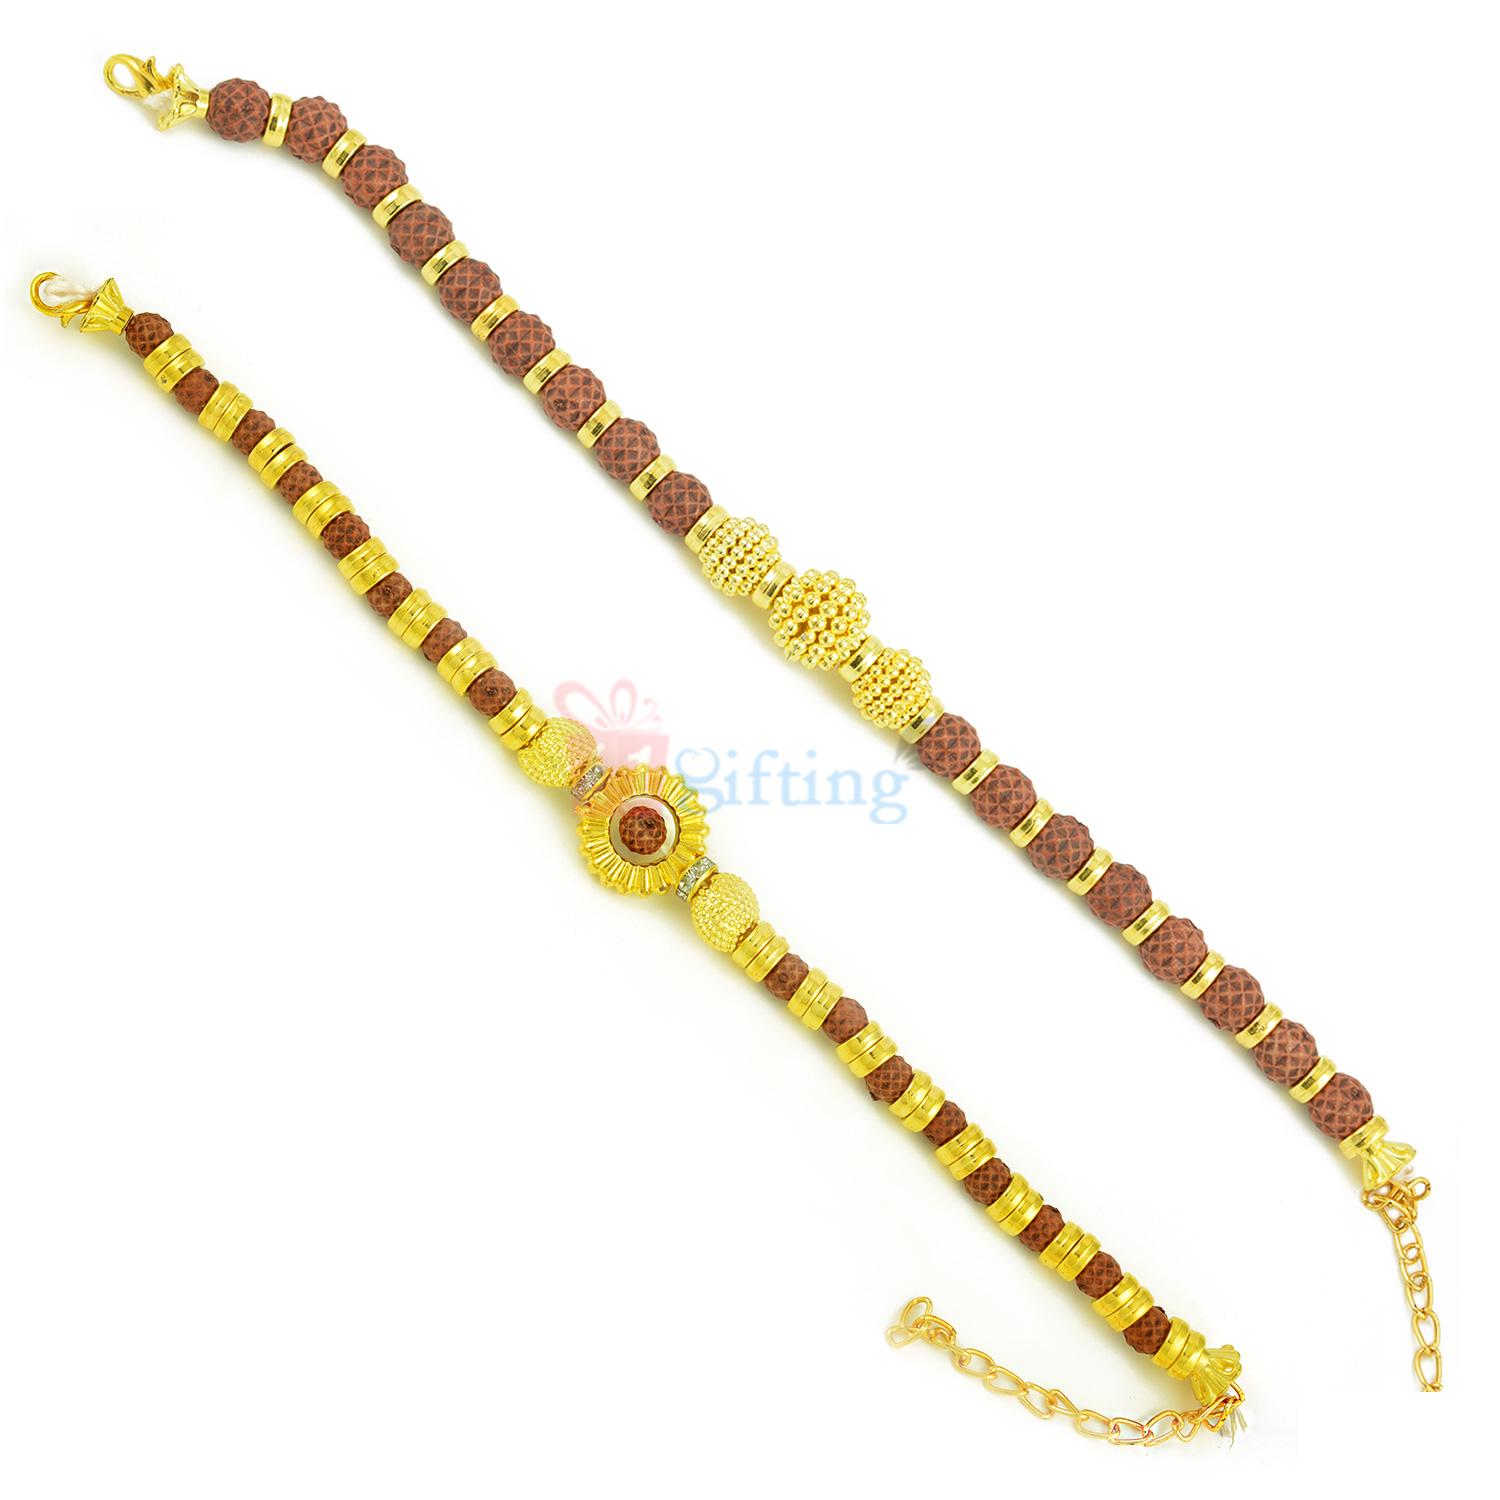 Aesthetic Golden and Rudraksh Theme Rakhi Bracelet Set of 2